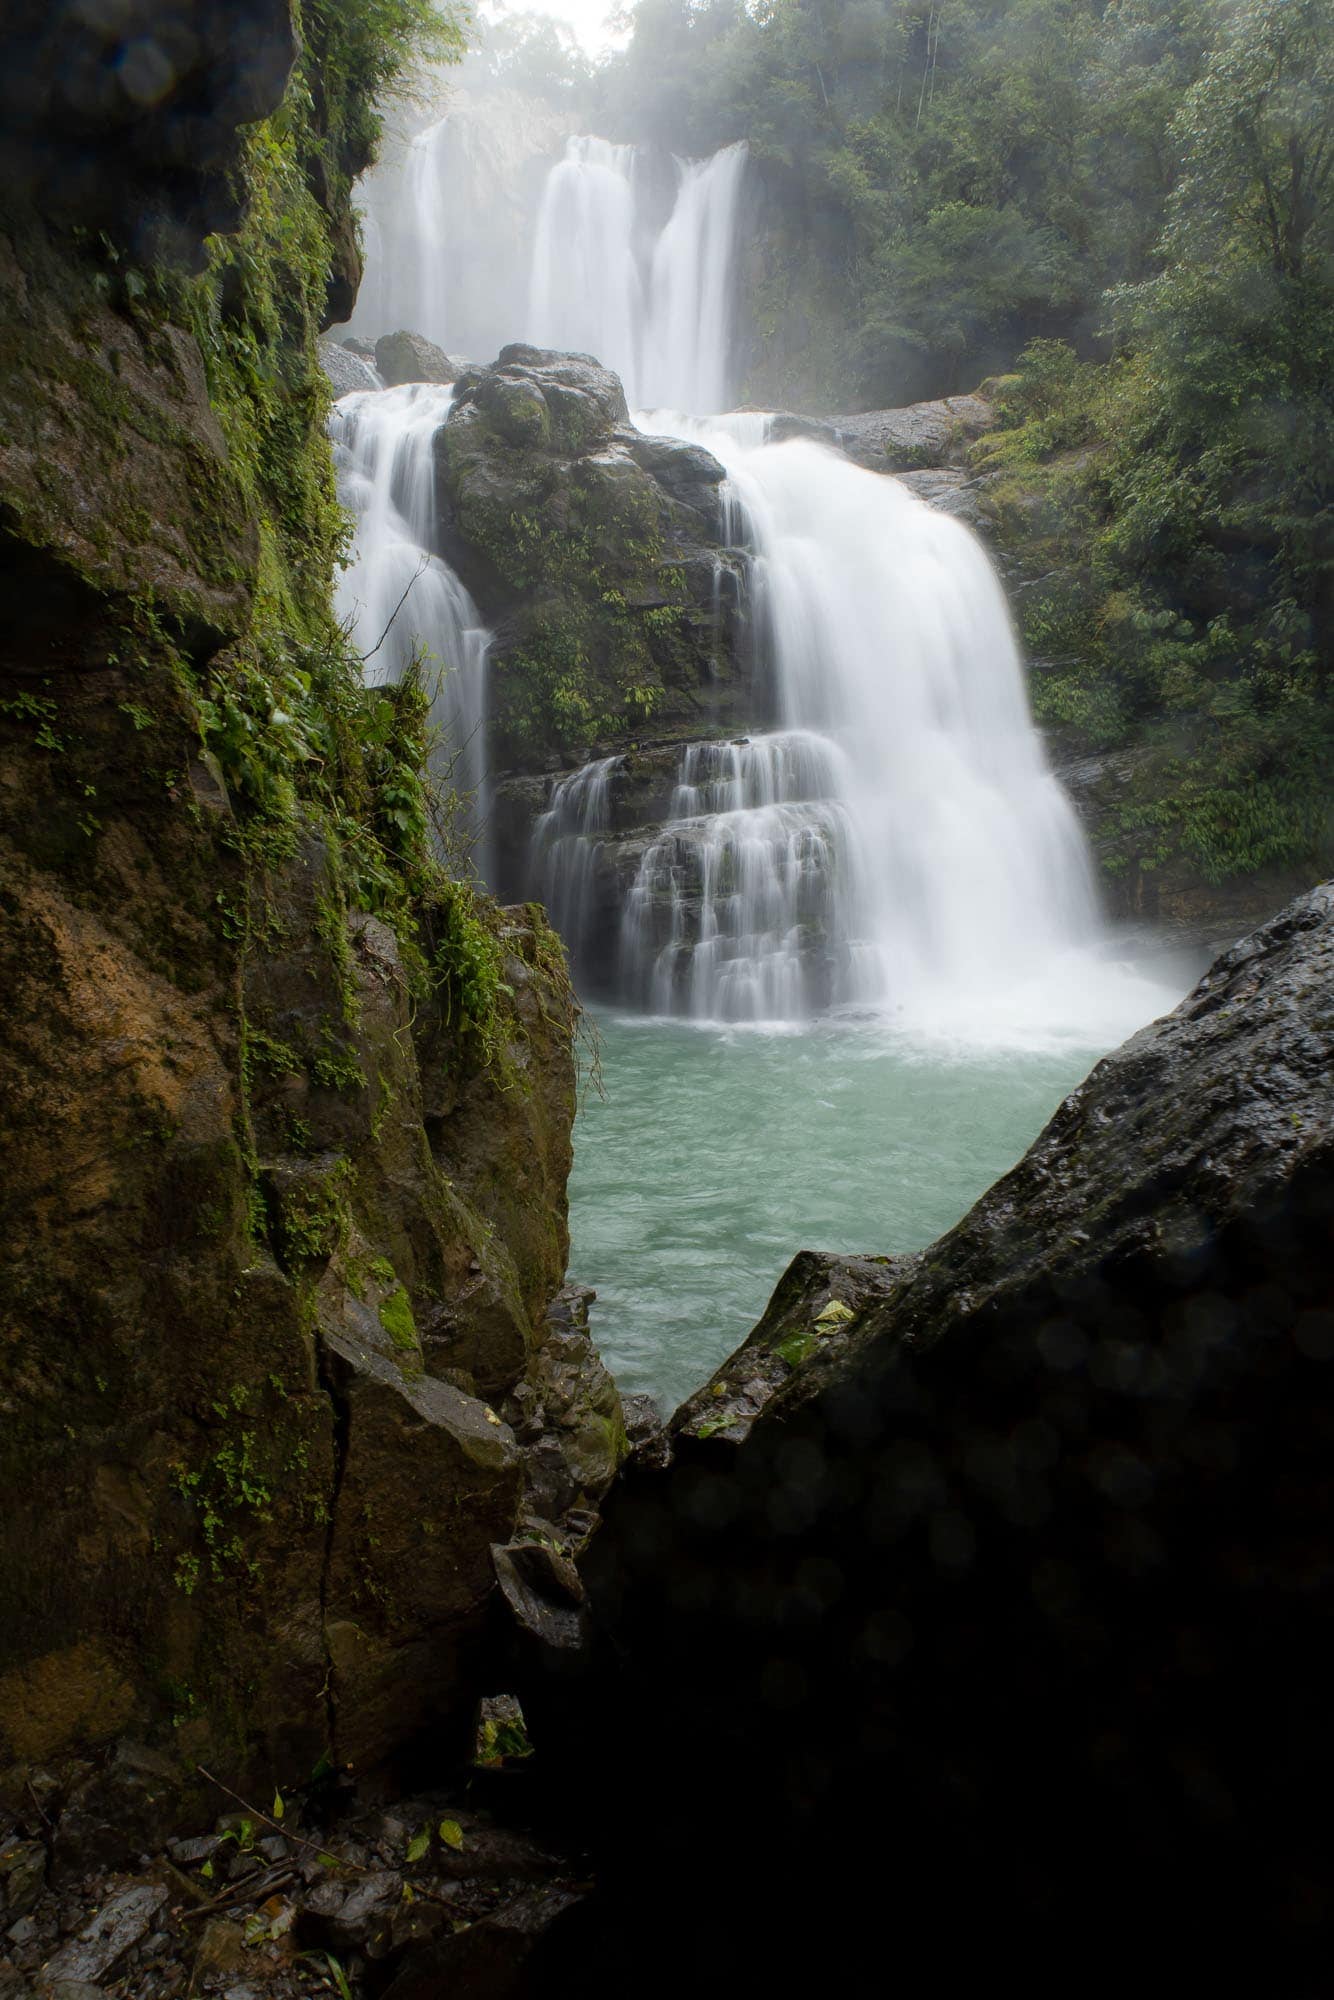 Waterfall between rocks.